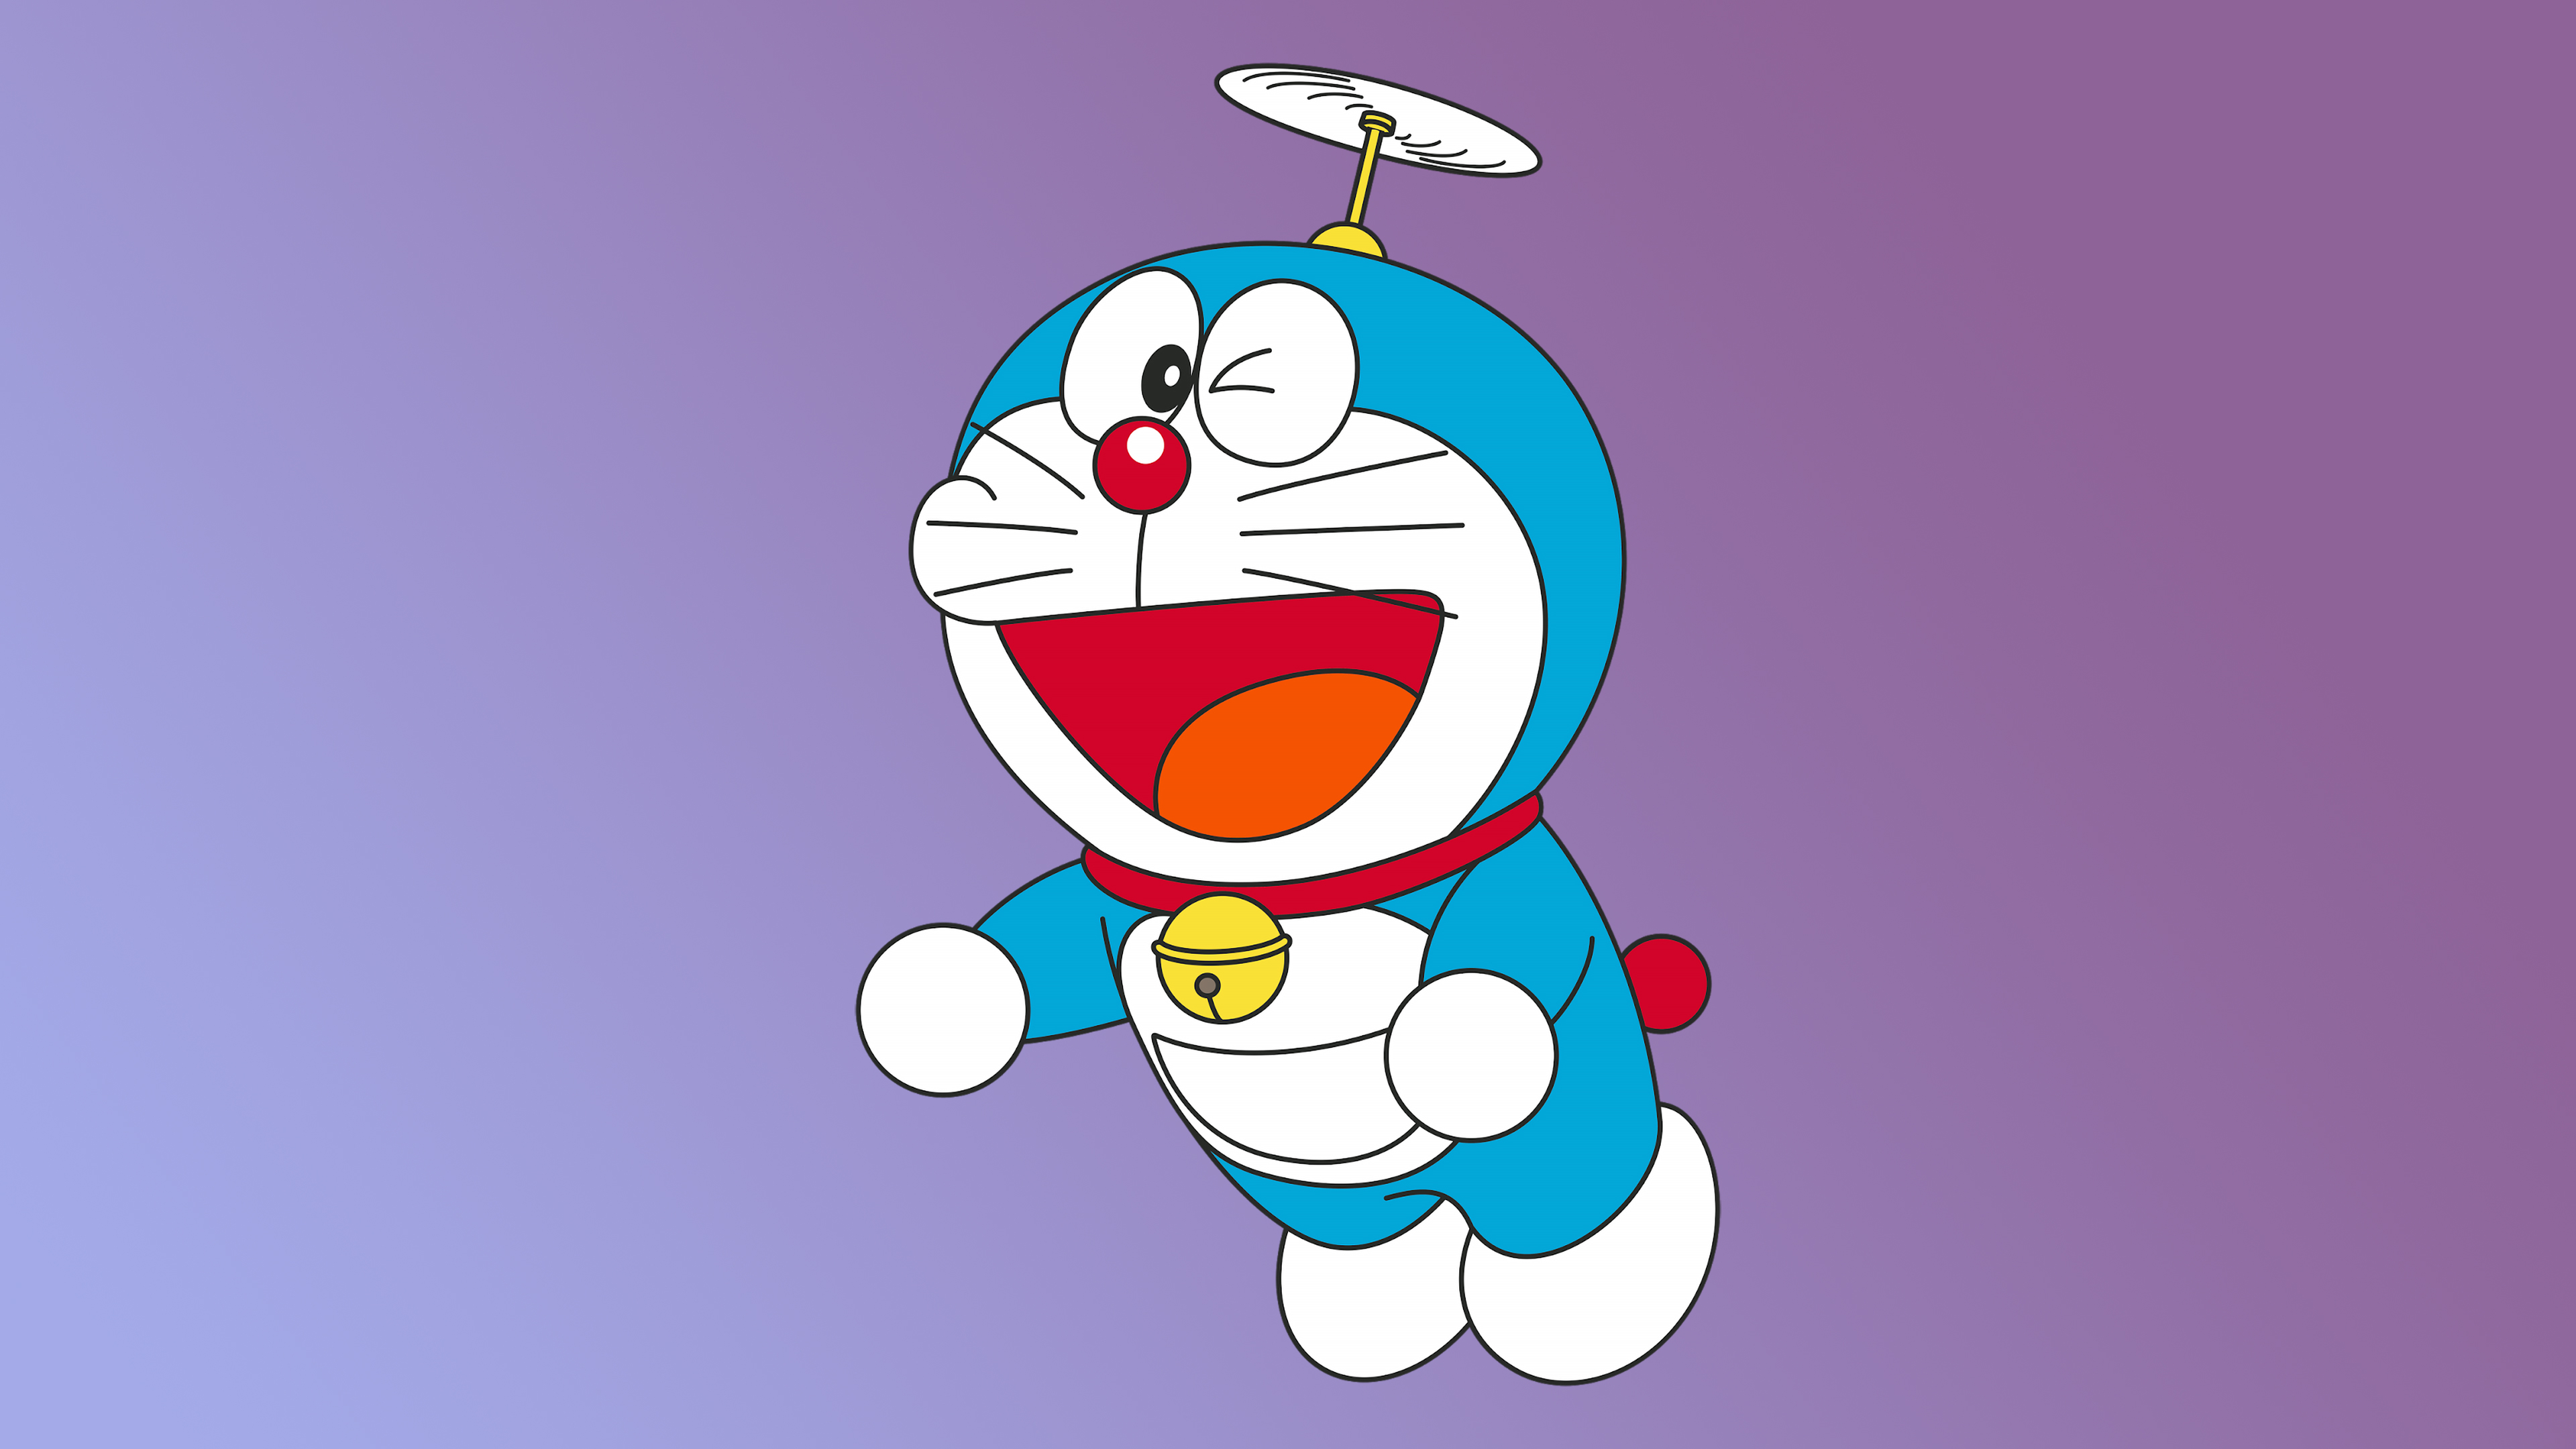 Doraemon Minimal 4K Wallpaper, HD Cartoon 4K Wallpapers ...